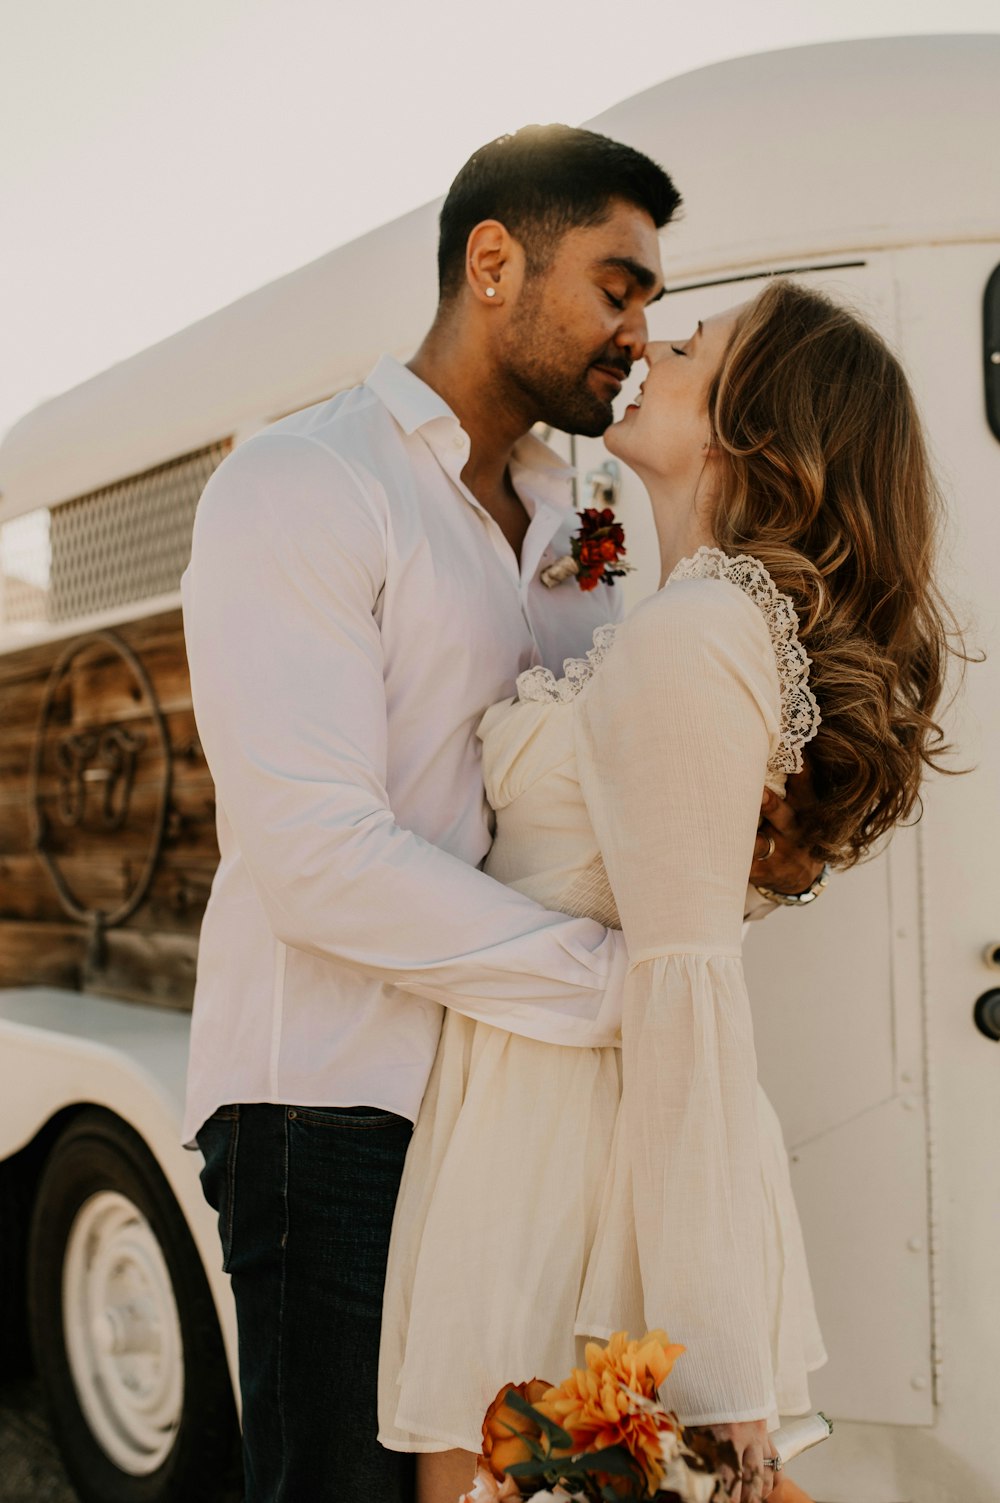 Ein Mann und eine Frau küssen sich vor einem Lastwagen